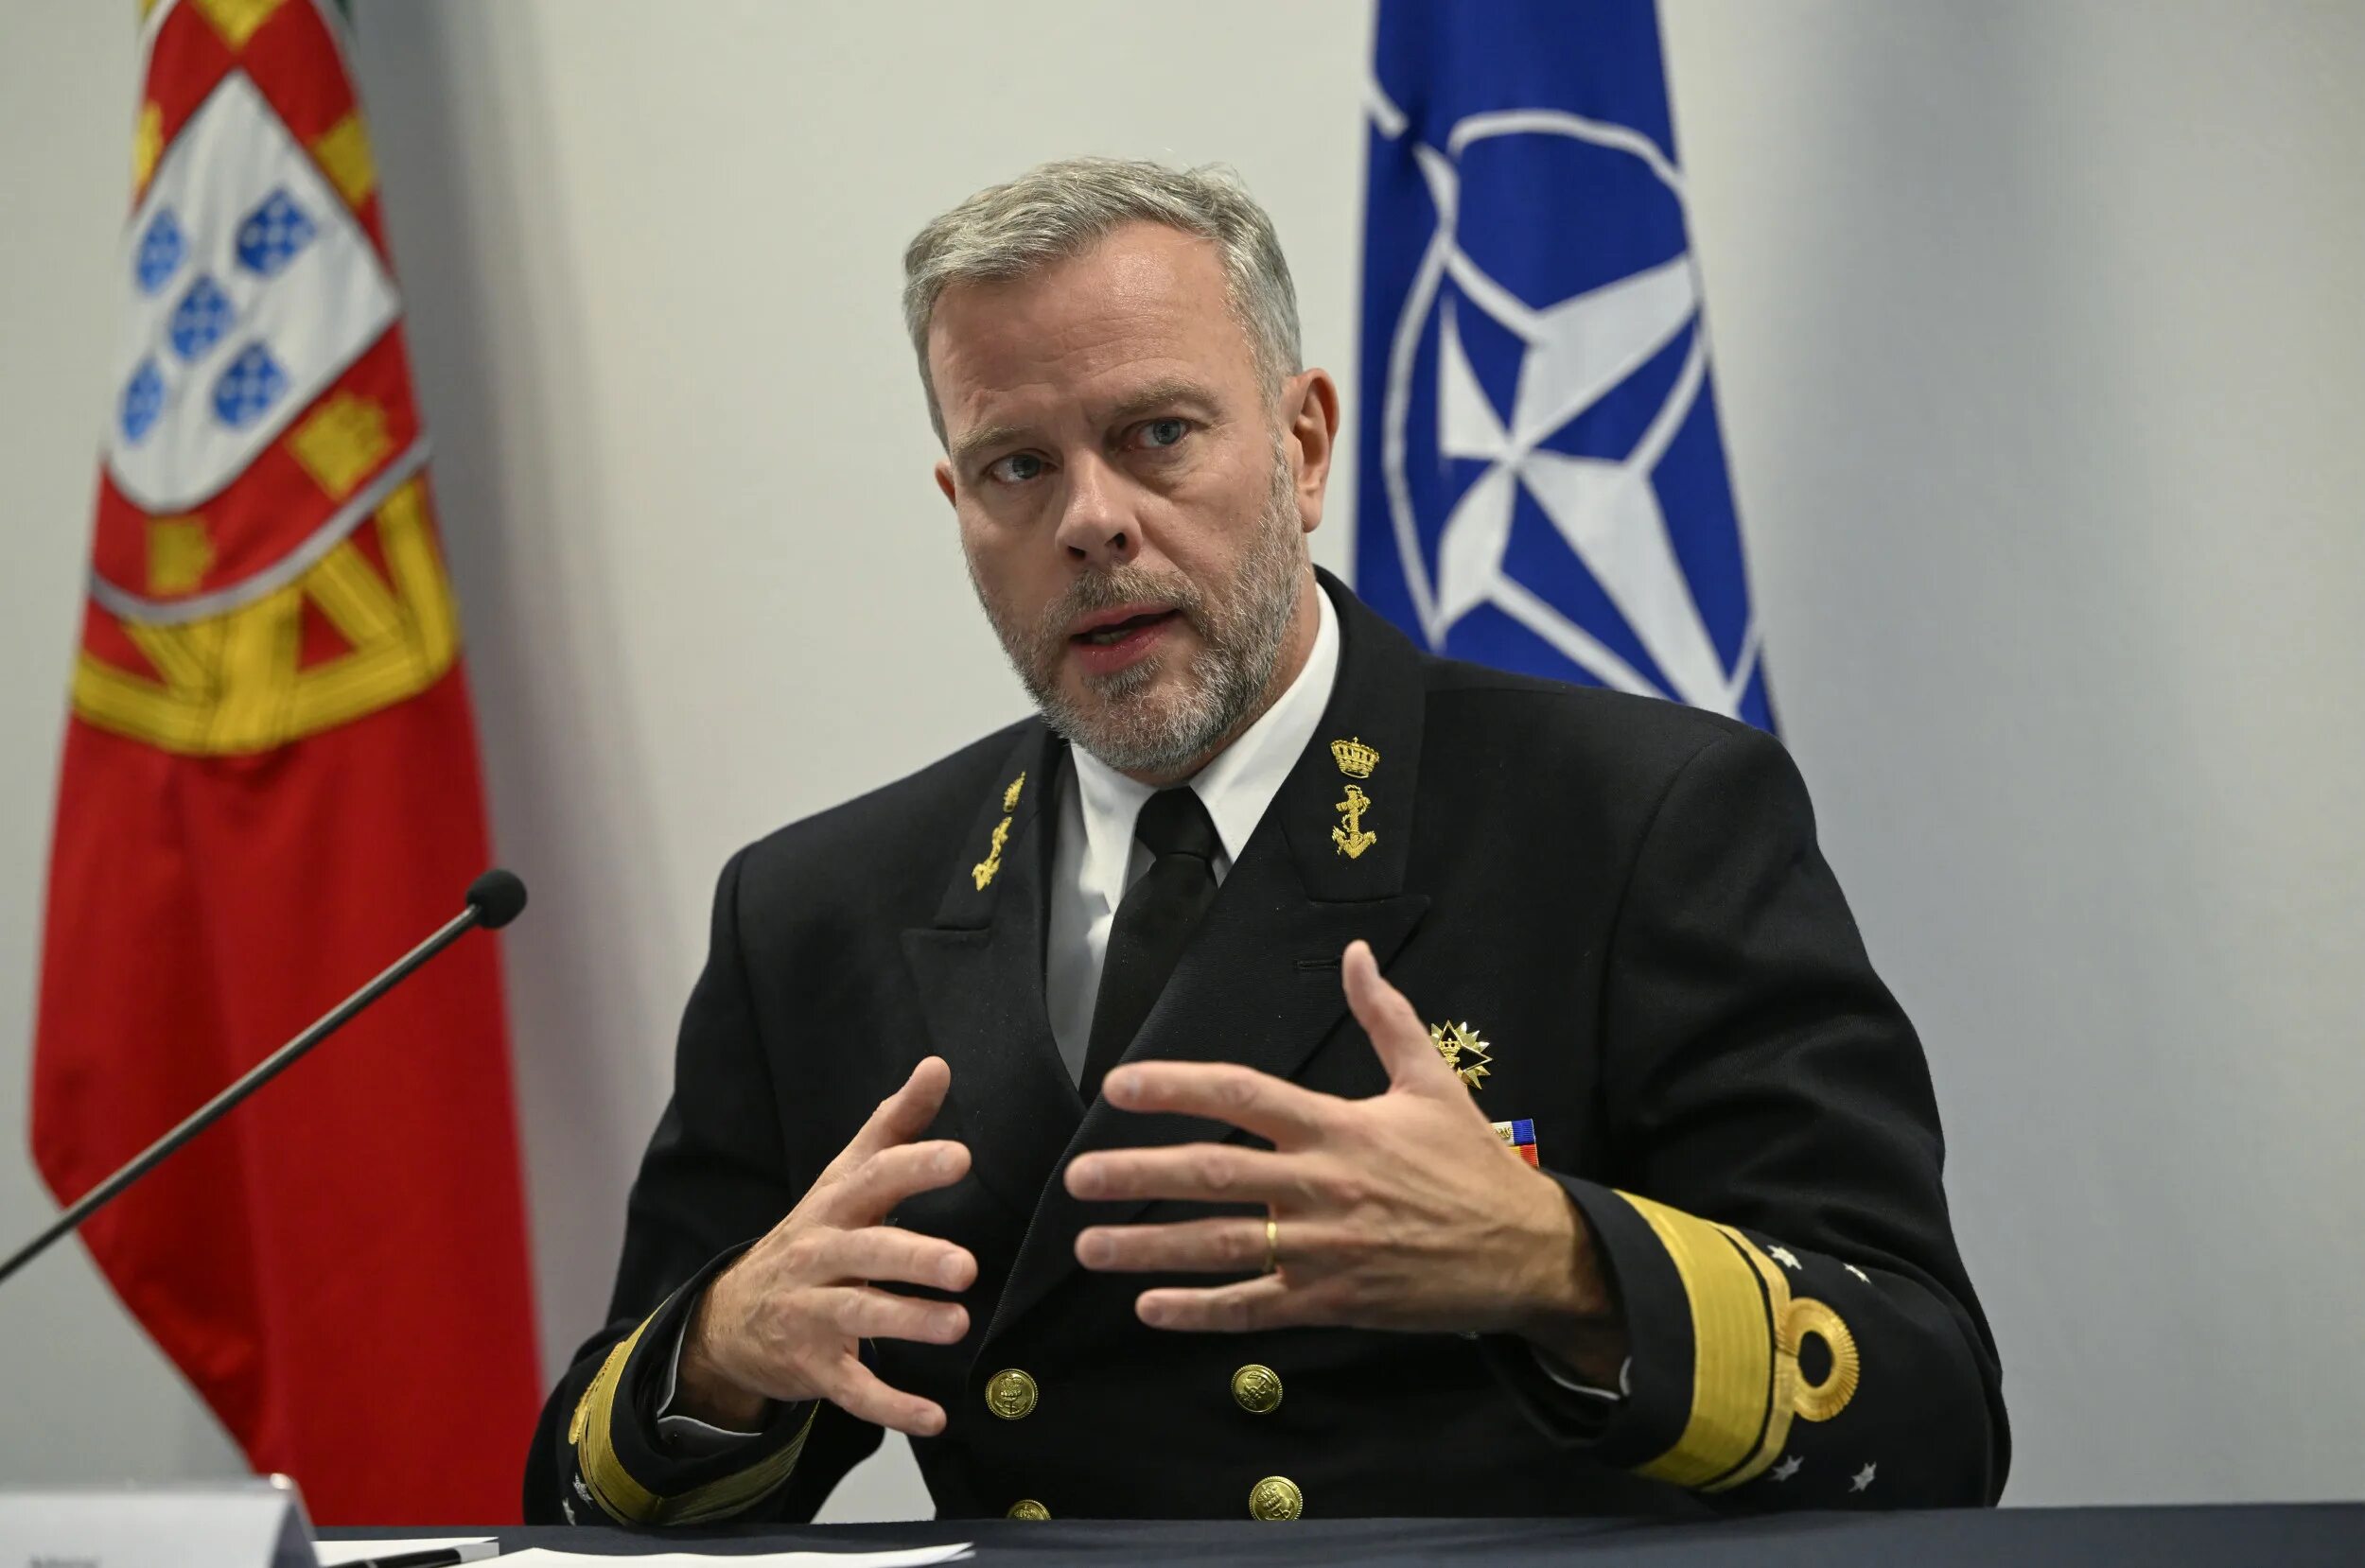 Глава нато бауэр. Роб Бауэр председатель военного комитета НАТО. Адмирал Роб Бауэр. Адмирал НАТО Бауэр. Адмирал ВМС Нидерландов Роб Бауэр.